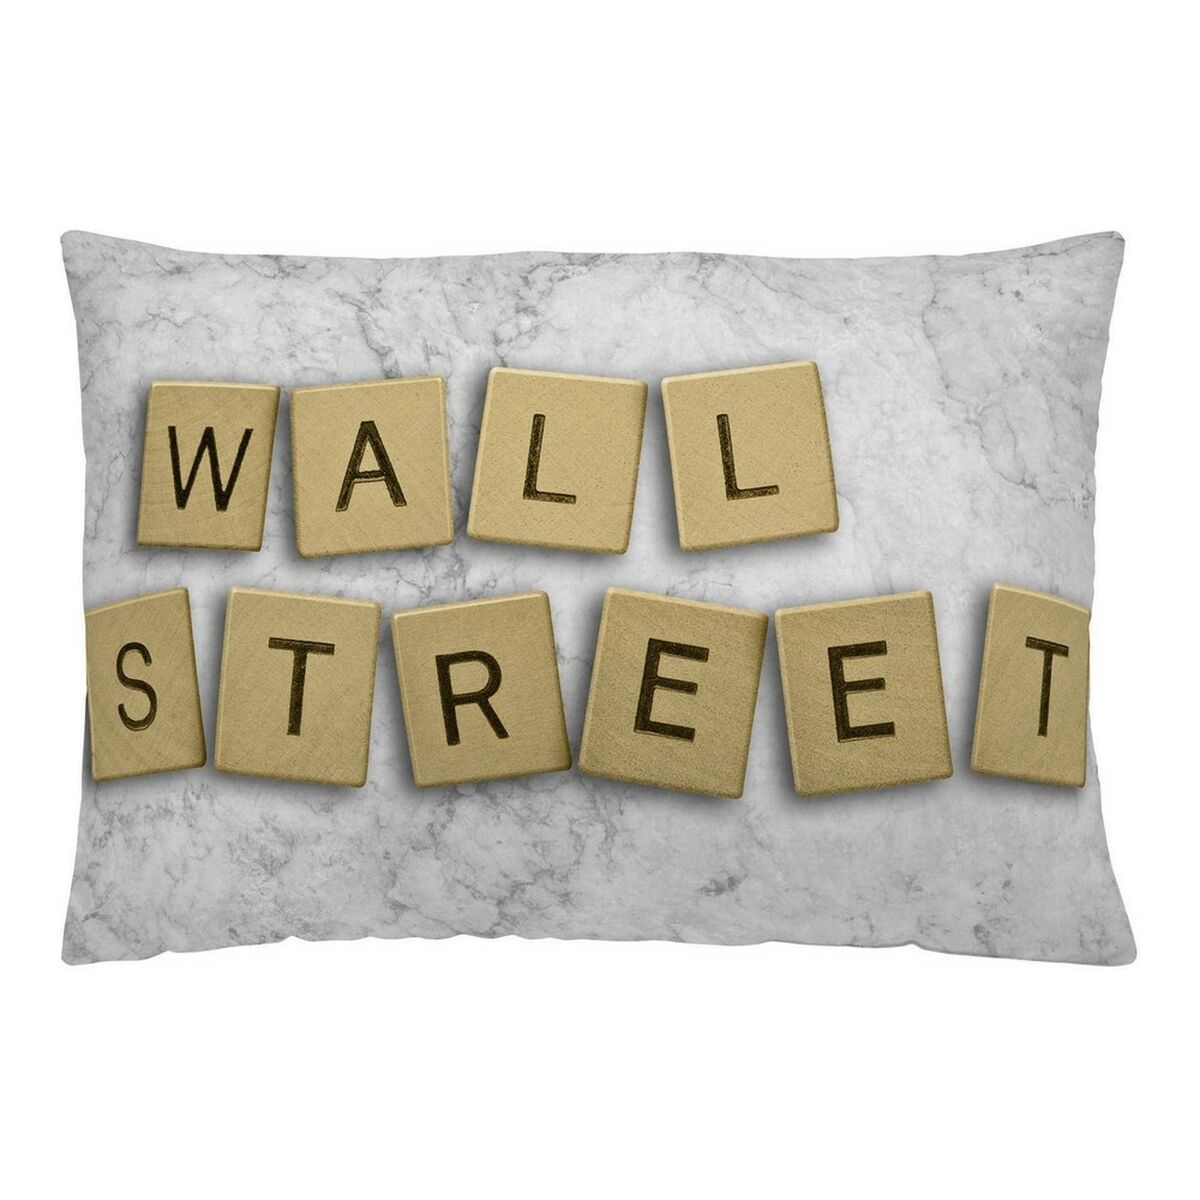 Cushion cover Naturals Wall Street (50 x 30 cm)